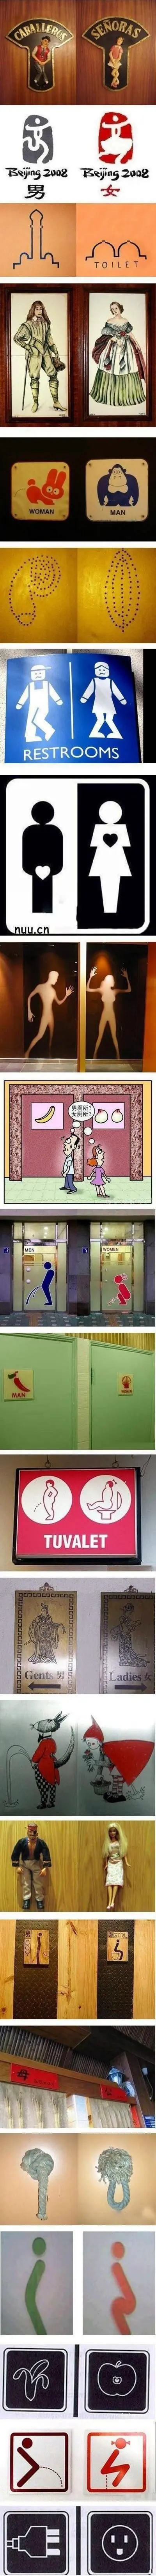 세계 각국의 화장실 남녀 표시 | mbong.kr 엠봉